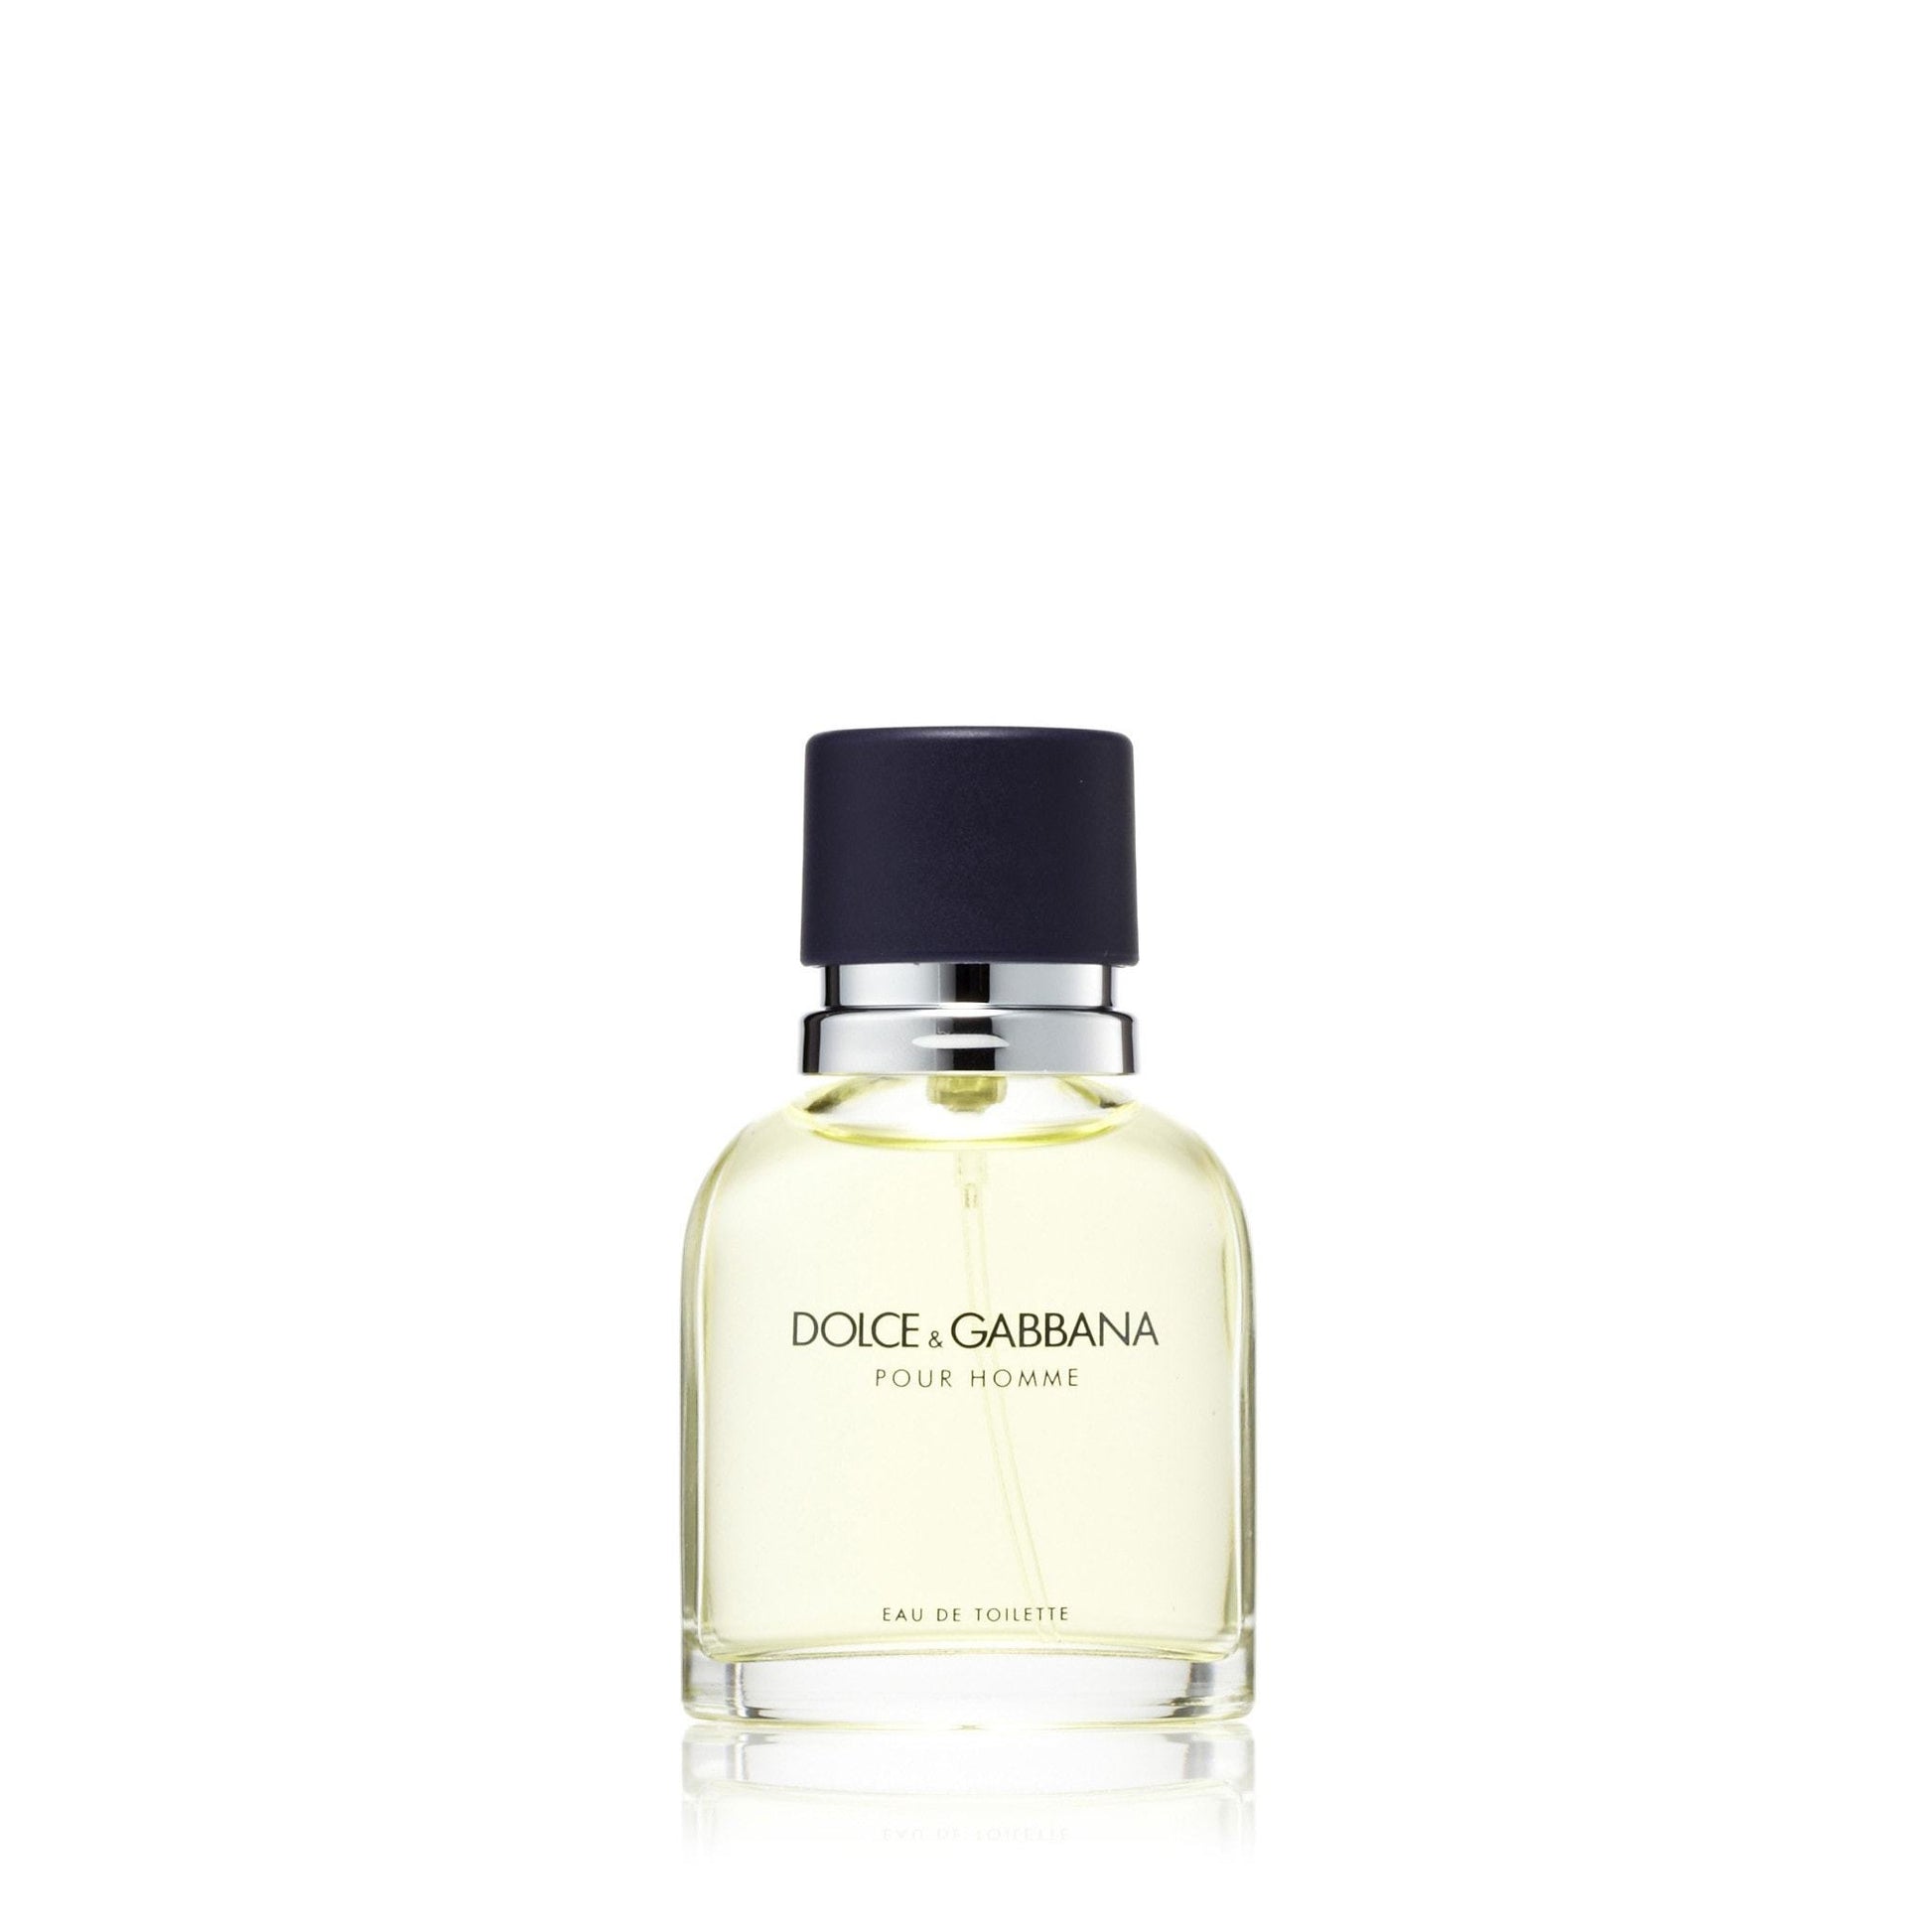 Dolce & Gabbana Eau de Toilette Spray for Men by D&G, Product image 2